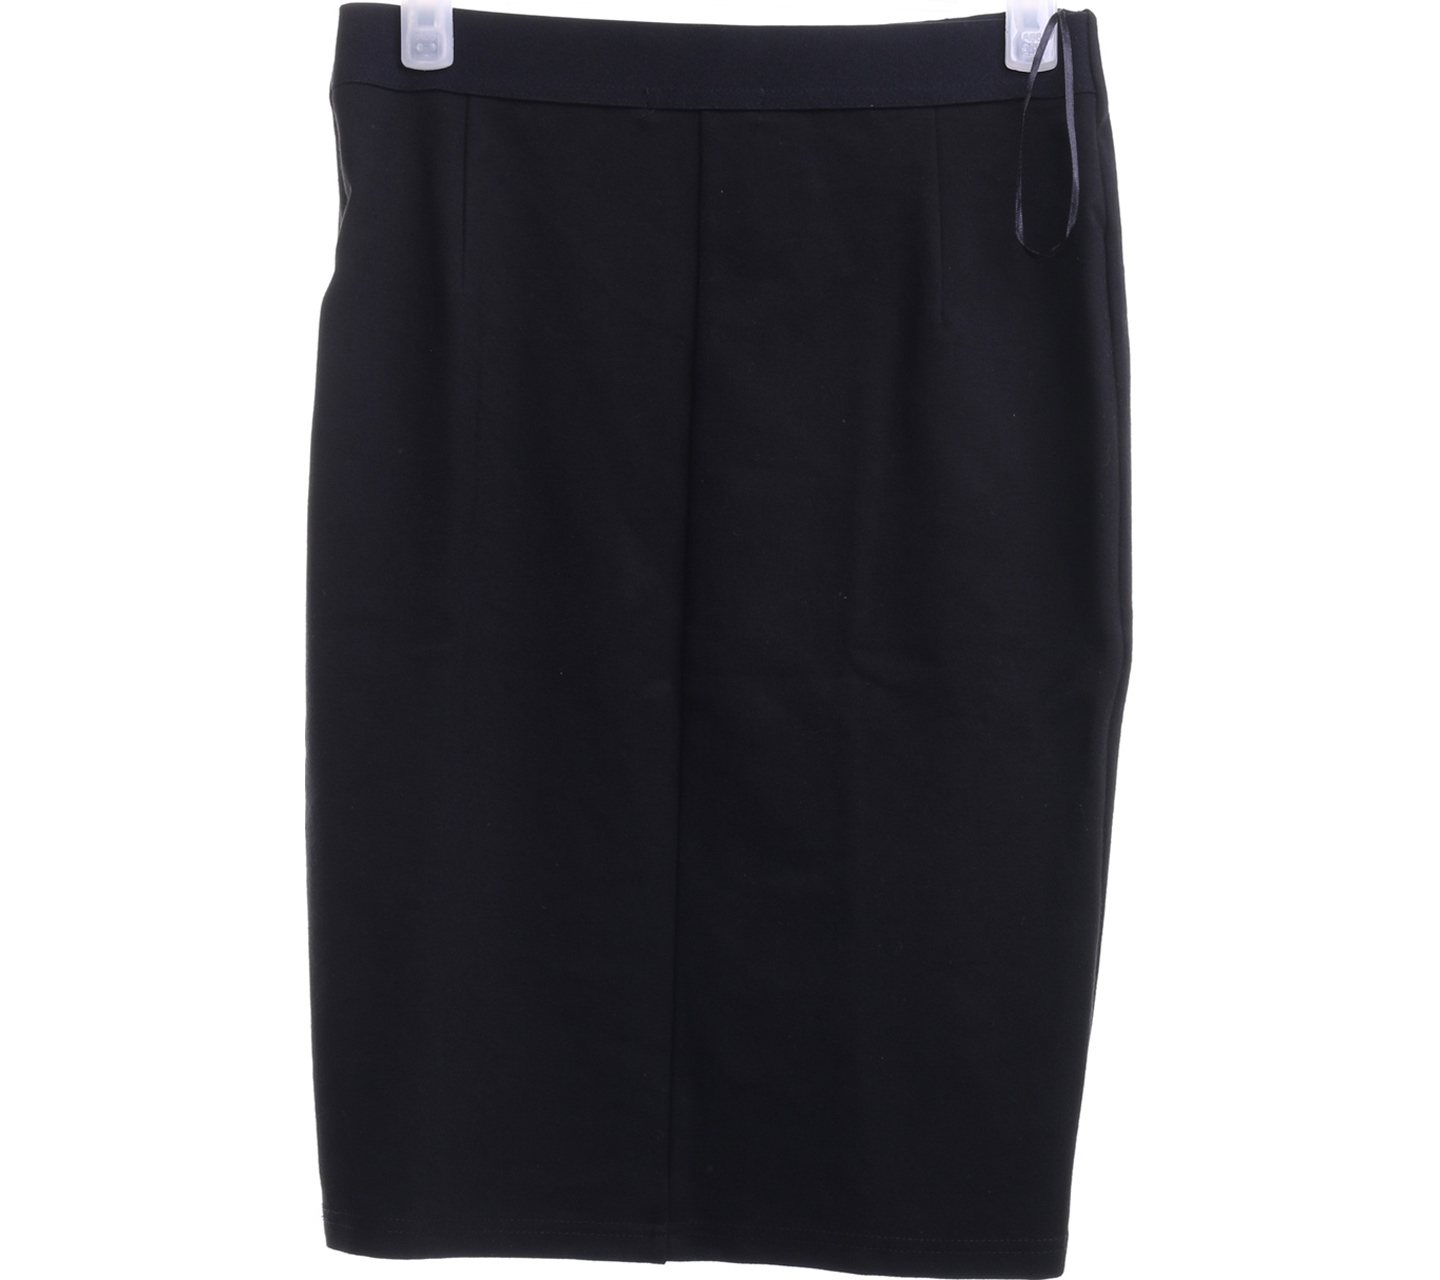 Nichii Black Mini Skirt